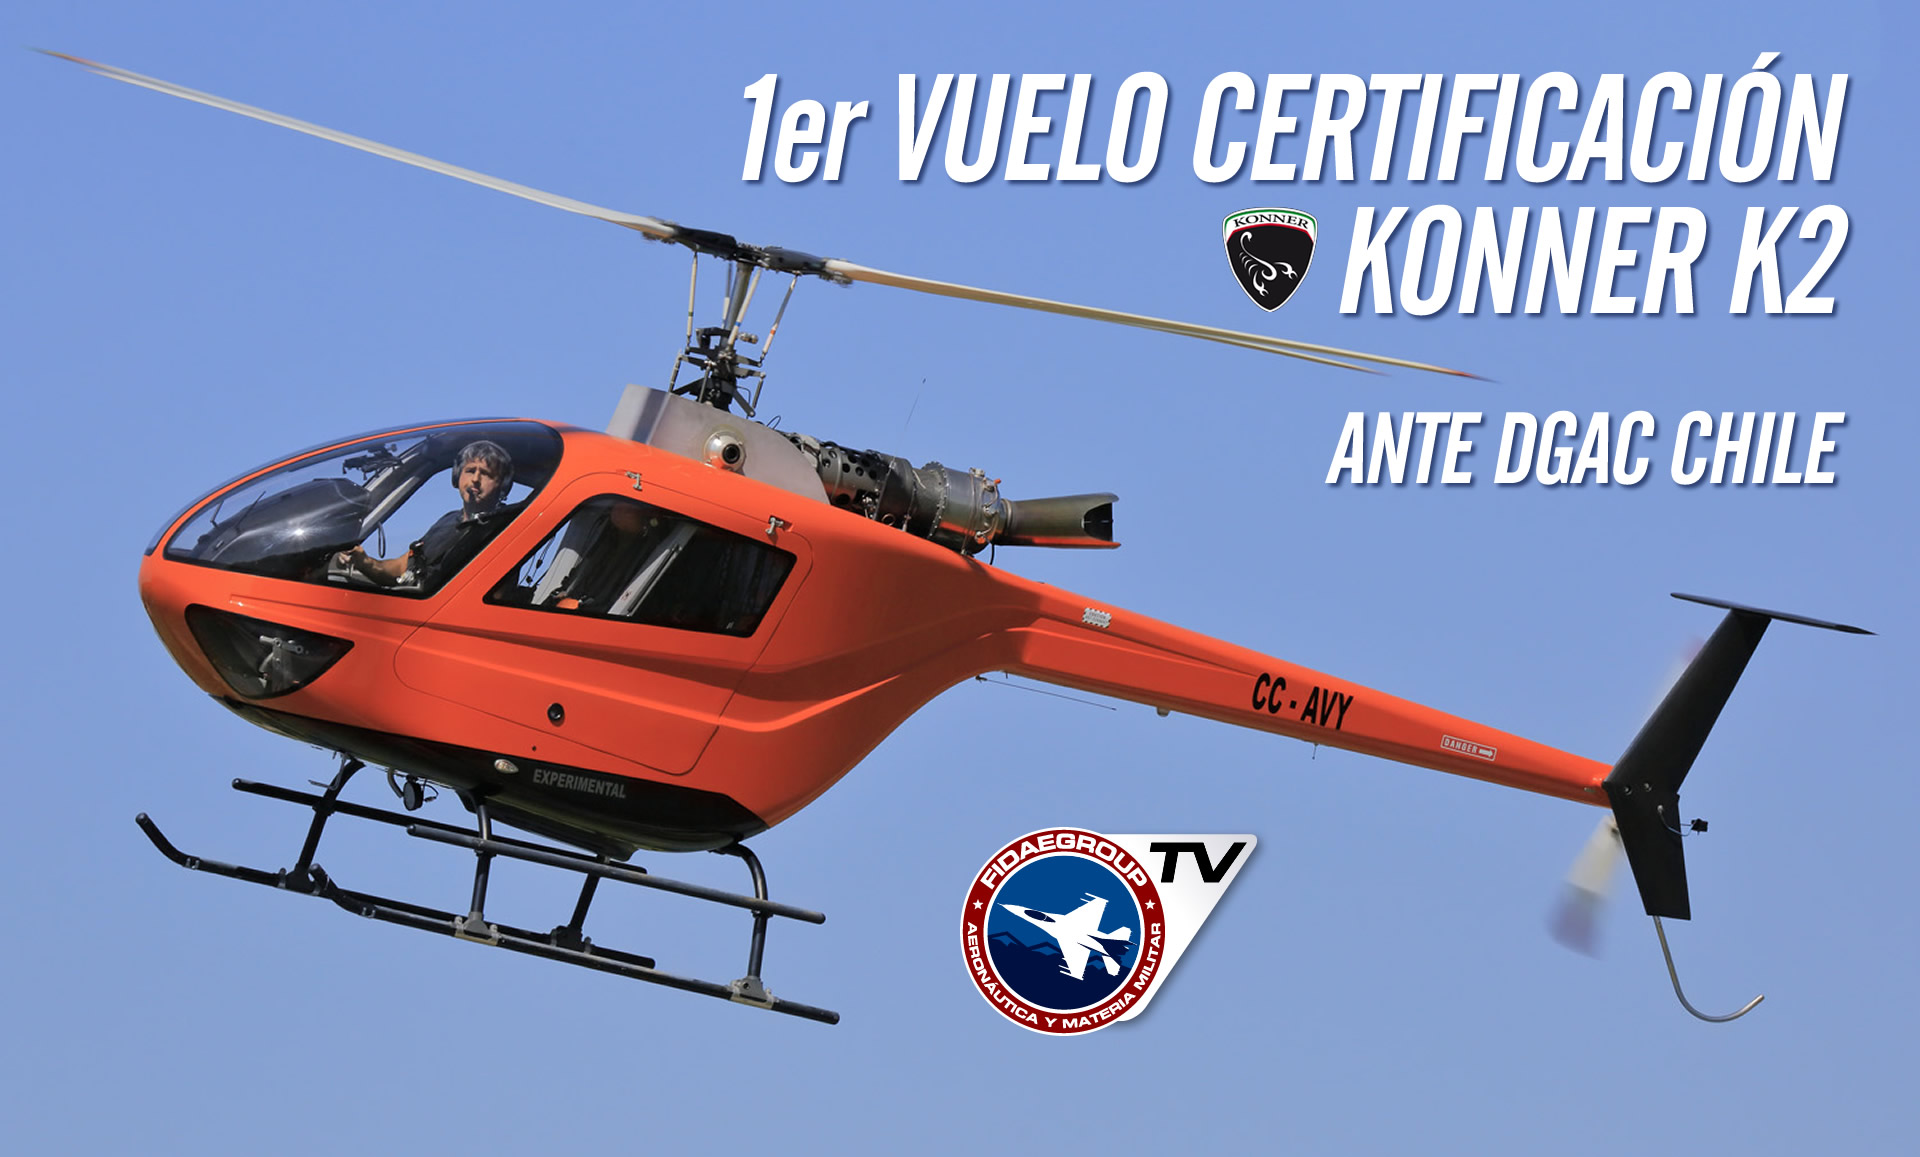 Llega a Chile el helicóptero Konner K2 con motor Diesel